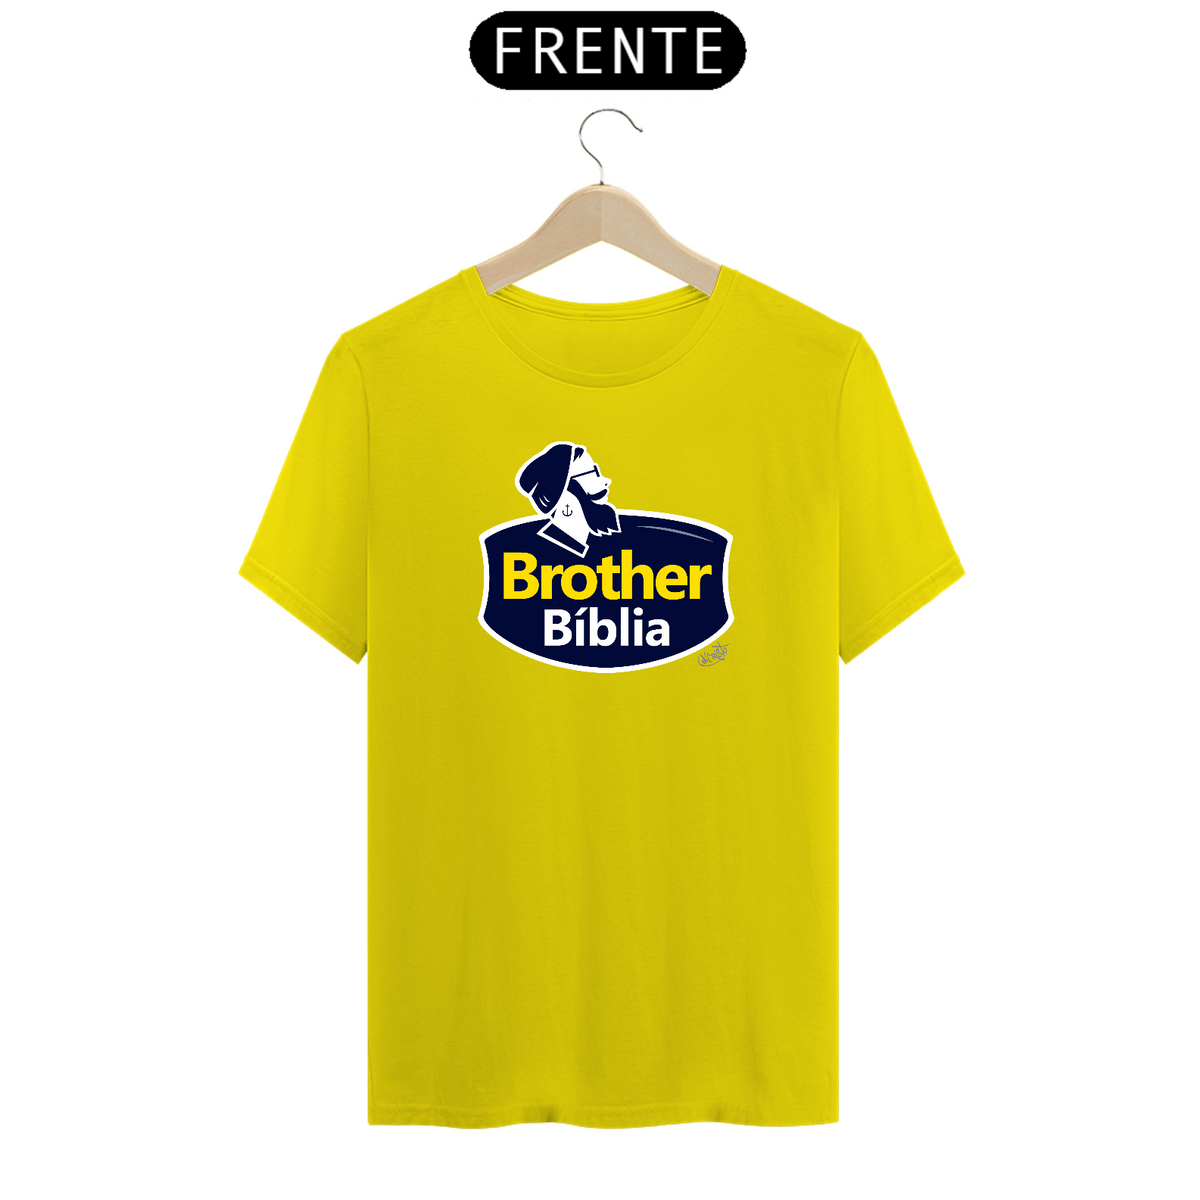 Nome do produto: Camiseta Brother Bíblia